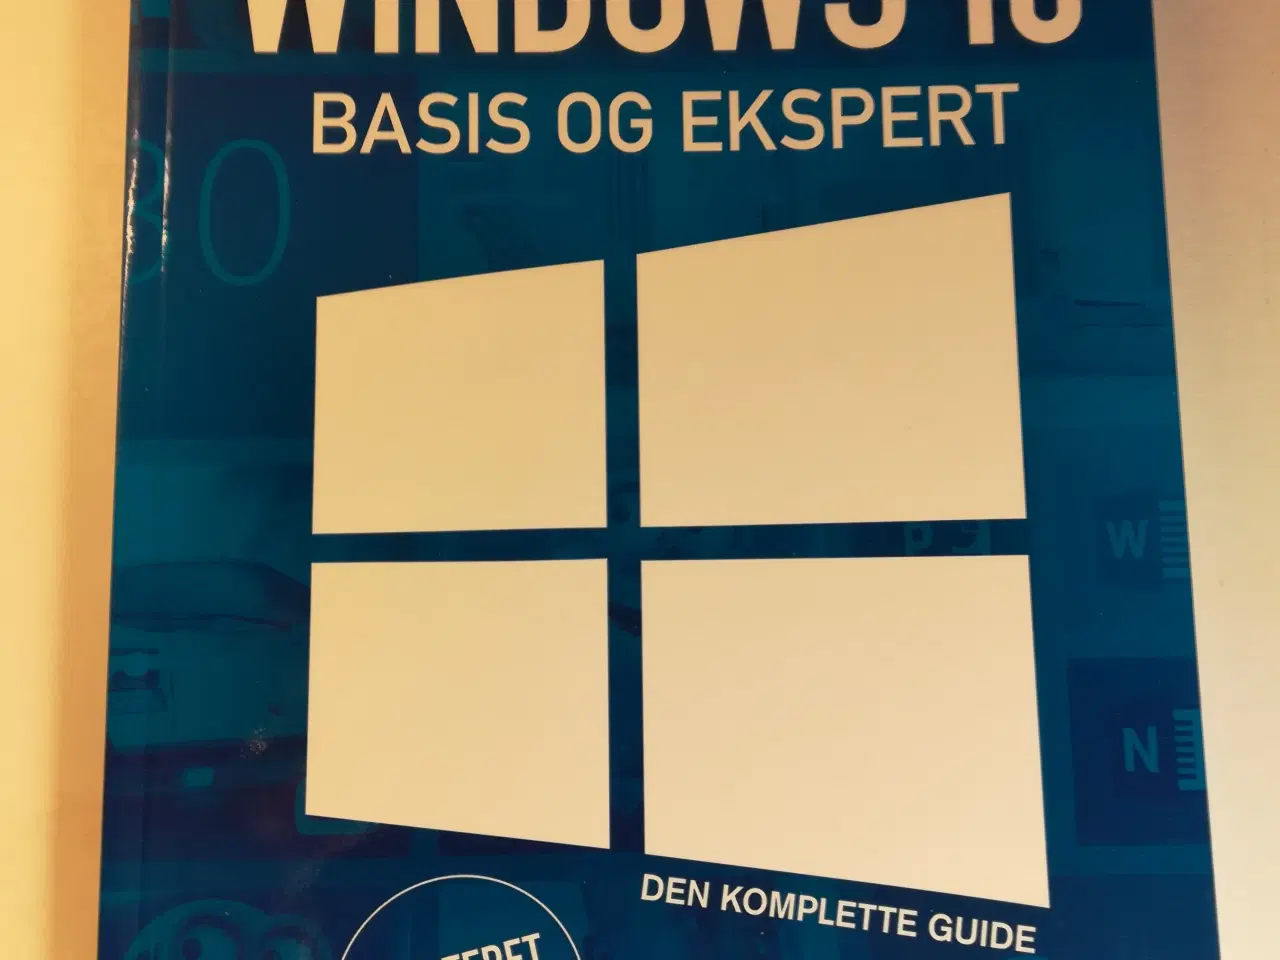 Billede 1 - Windows 10 bogen - Basis og ekspert - bog 304 s.  